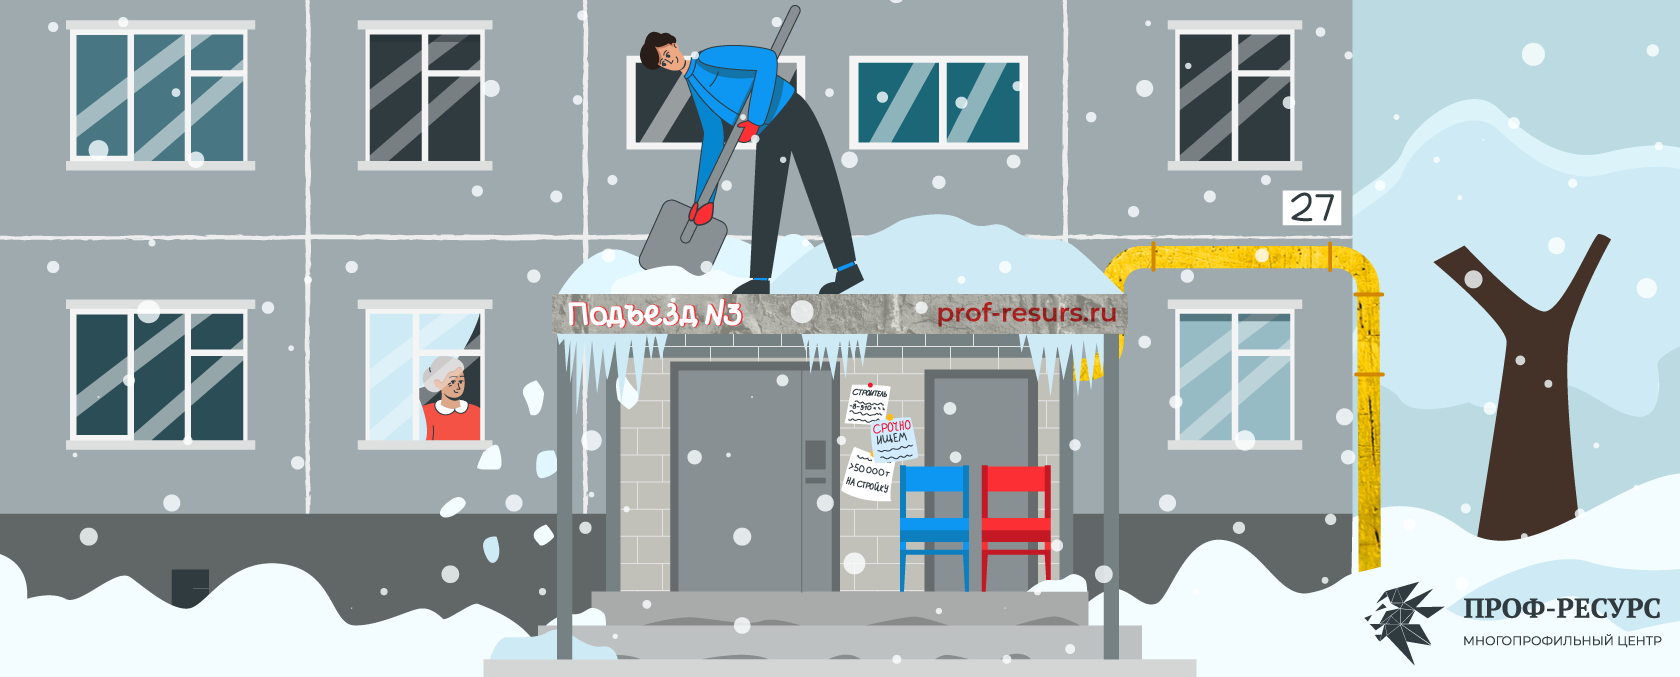 Какие правила охрану труда нужно соблюдать при очистке крыш от снега и льда?